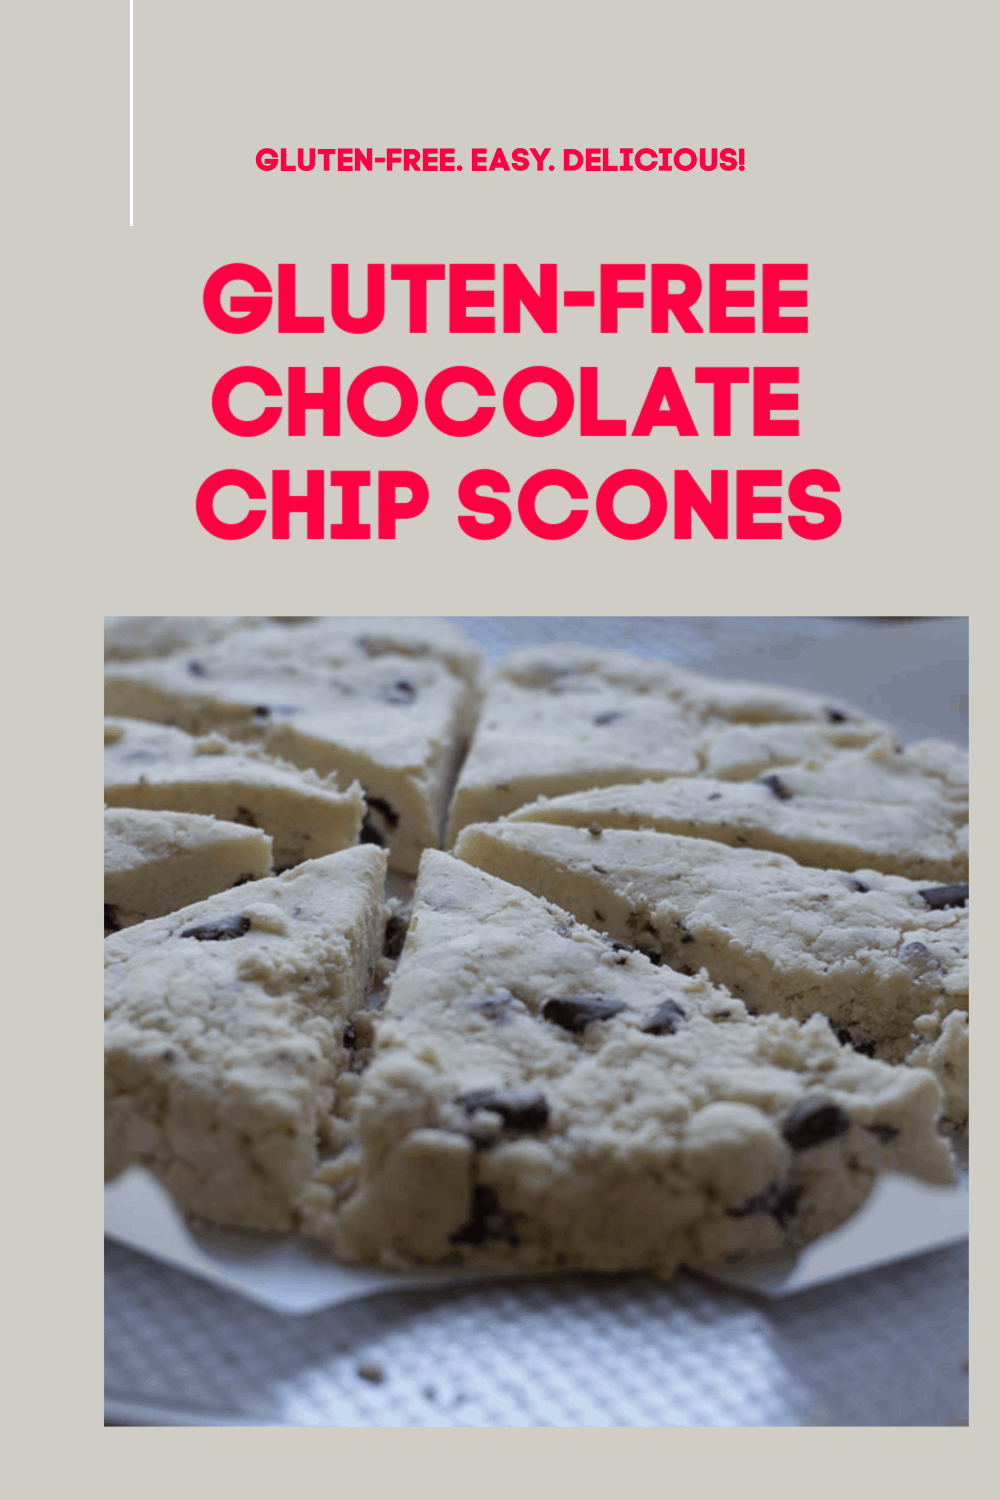 Gluten-free scones